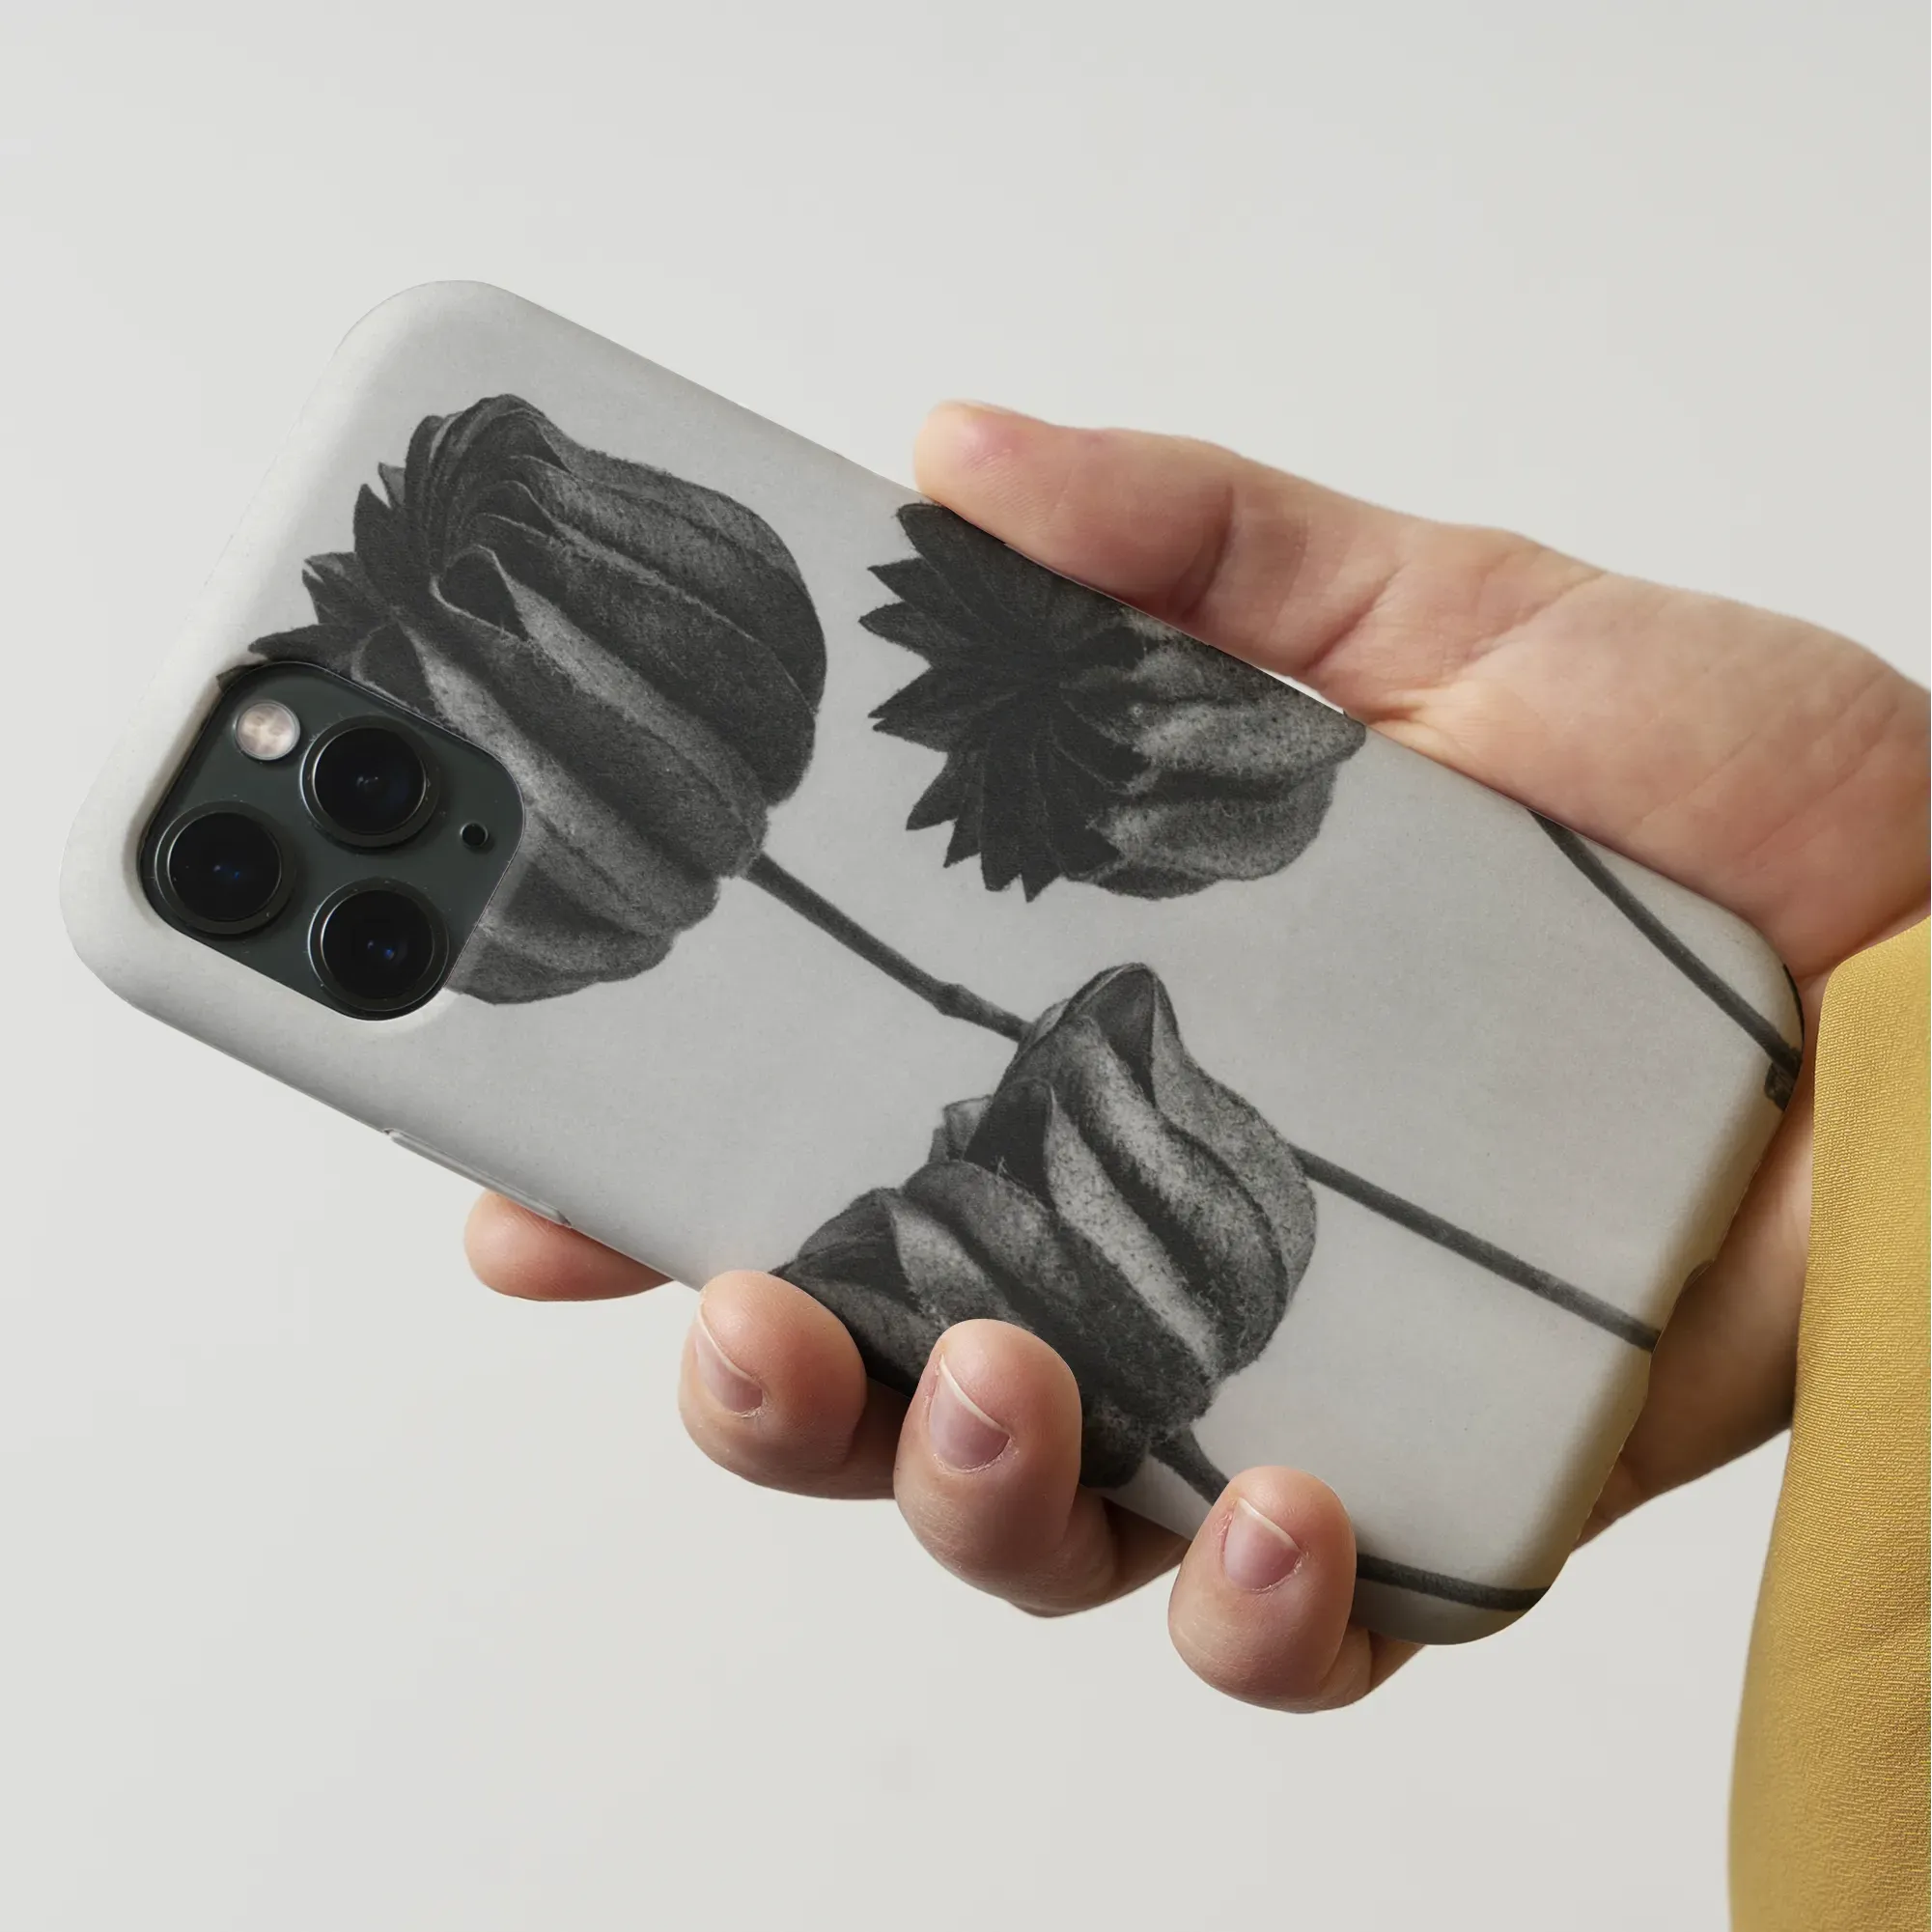 Abutilon (lime Mallow) Pod By Karl Blossfeldt Art Phone Case - Mobile Phone Cases - Aesthetic Art